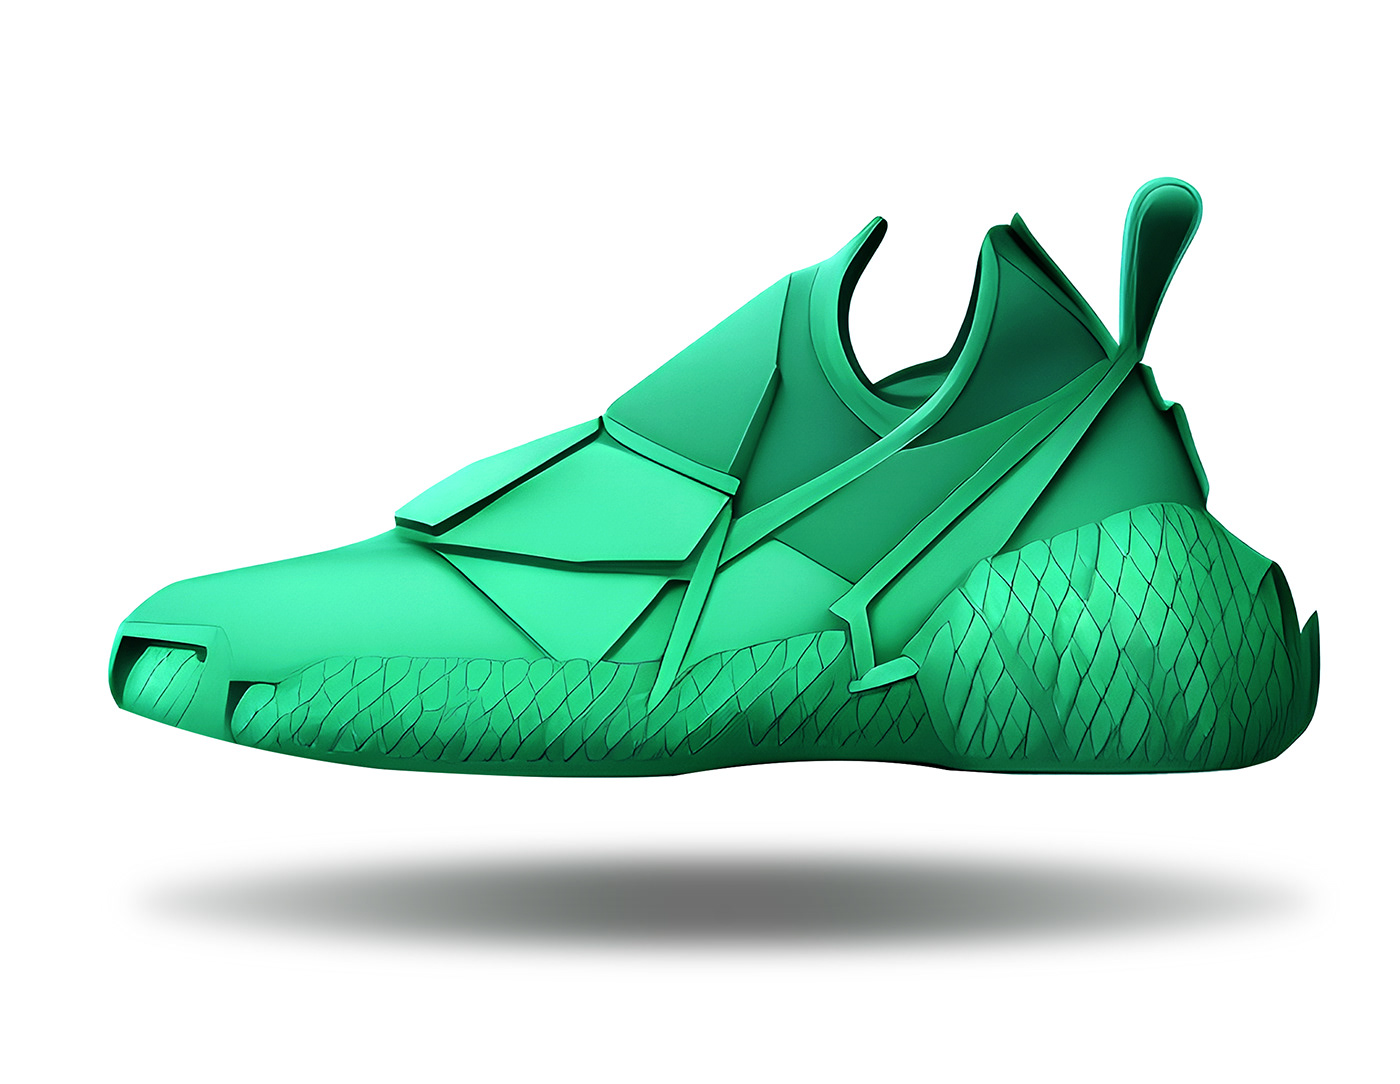 concept conceptkicks design digital illustration Fashion  footwear footwear design product Render sneakers